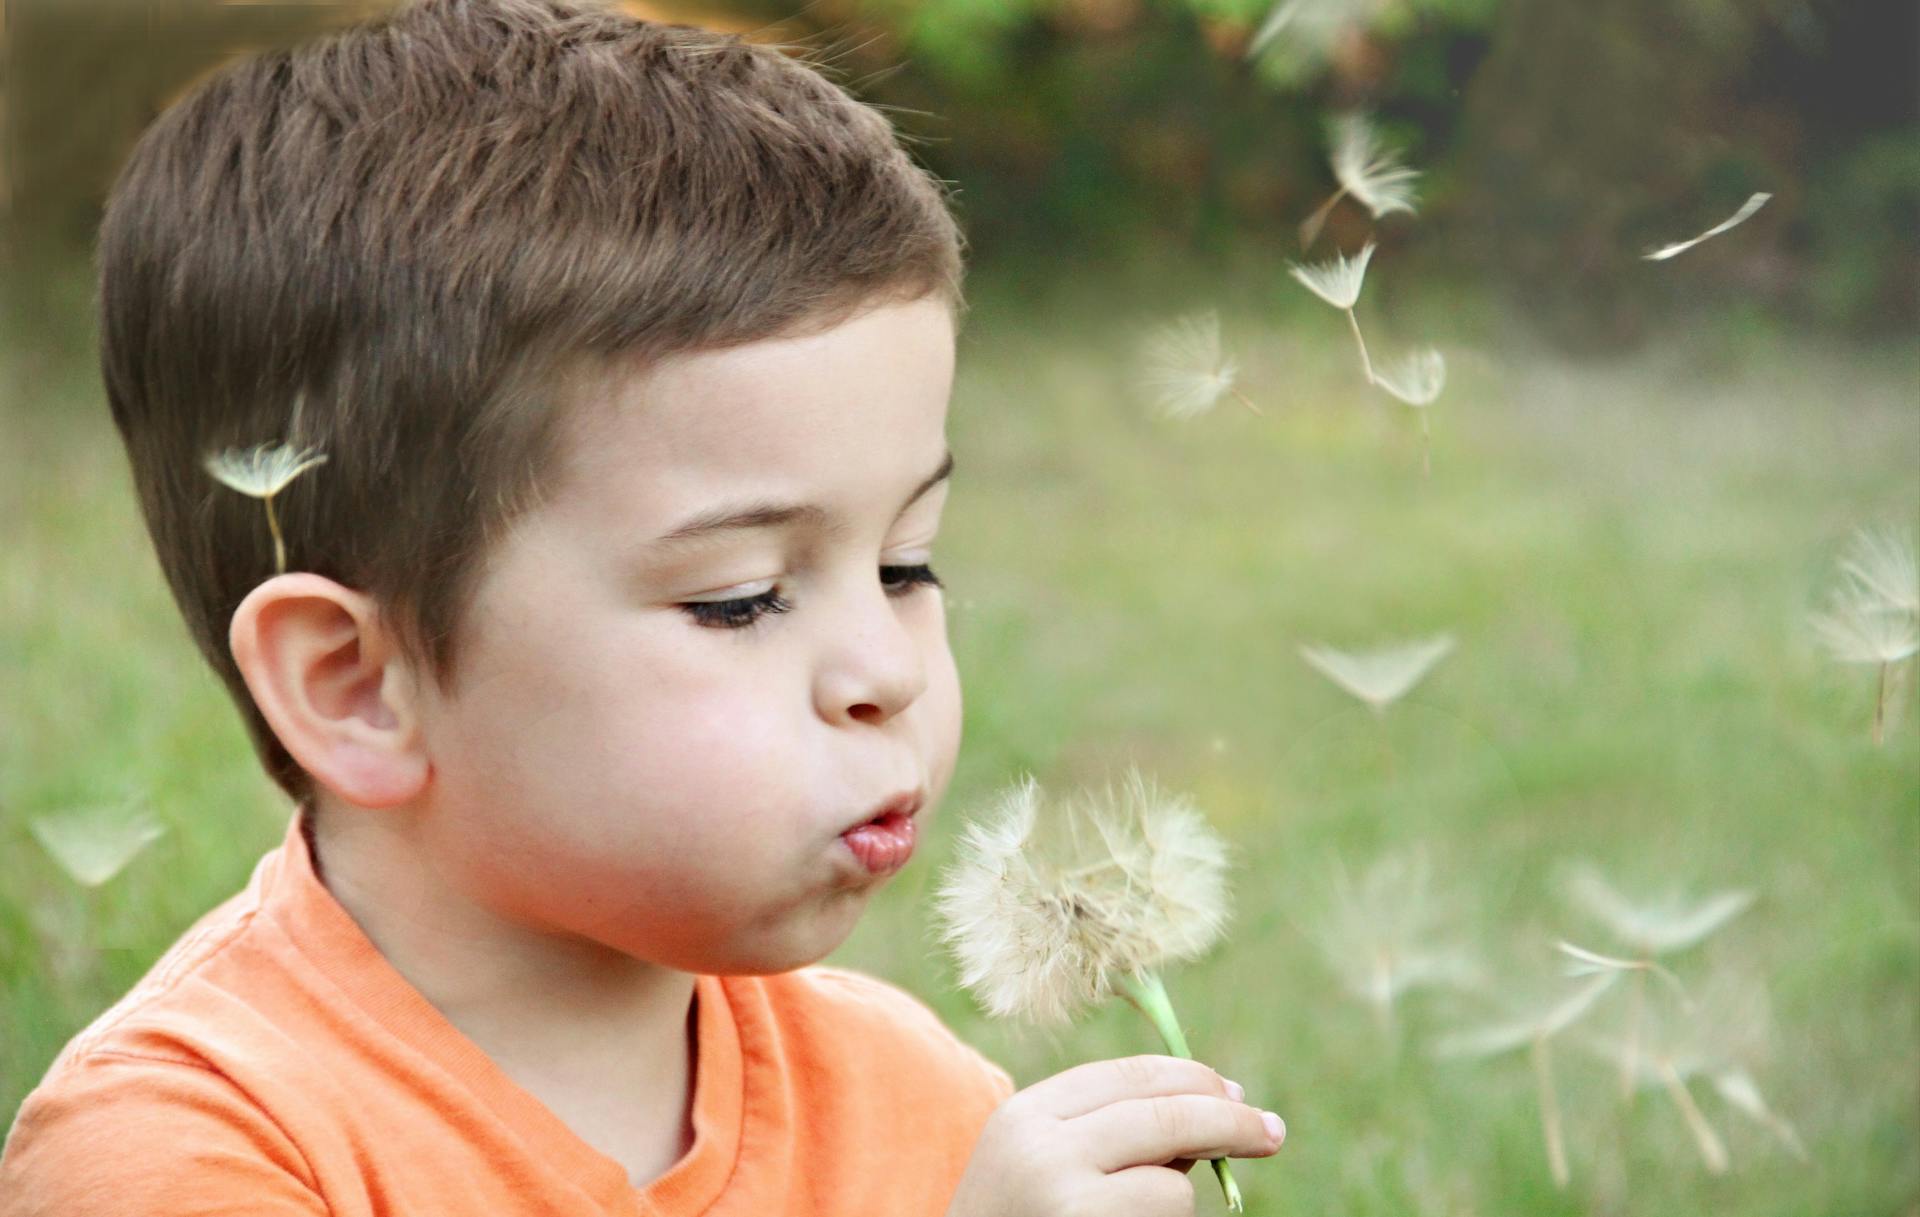 Little boy blowing on a dandelion | Source: Pexels